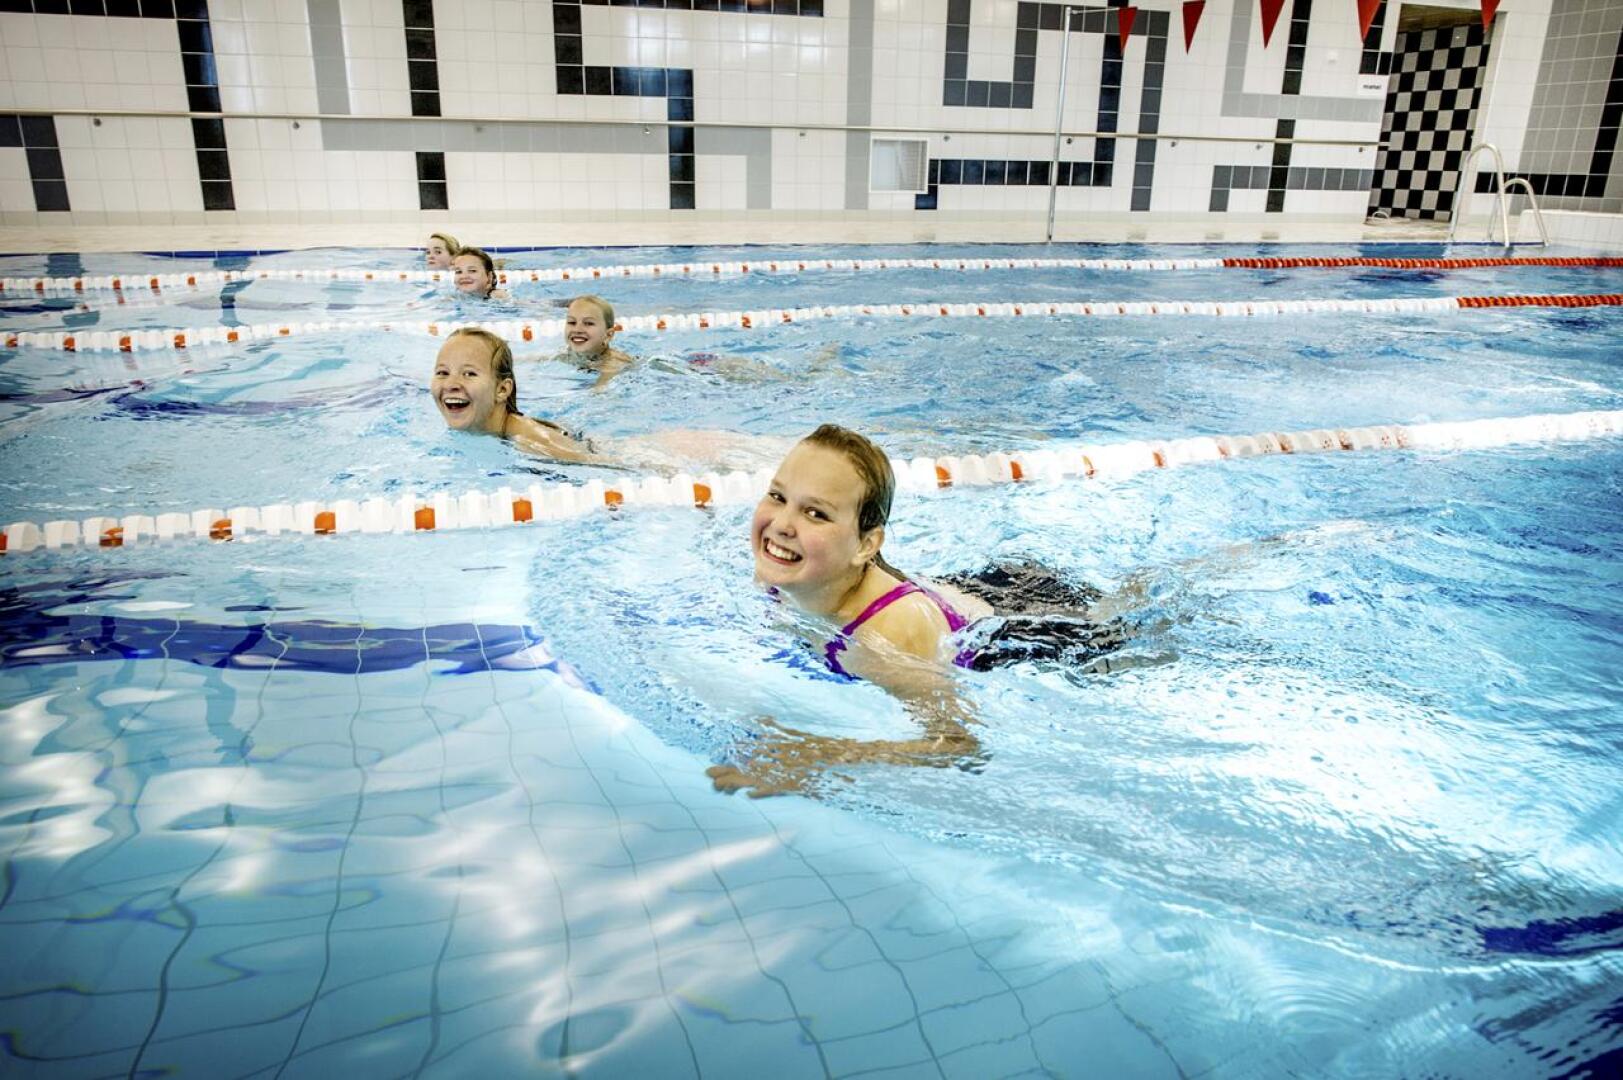 Vuoden uimaliikuntapaikkana palkittu Kitinvapari sai nimen ja avasi ovensa vuonna 2013. Arkistokuva uusitusta uima-altaasta. 